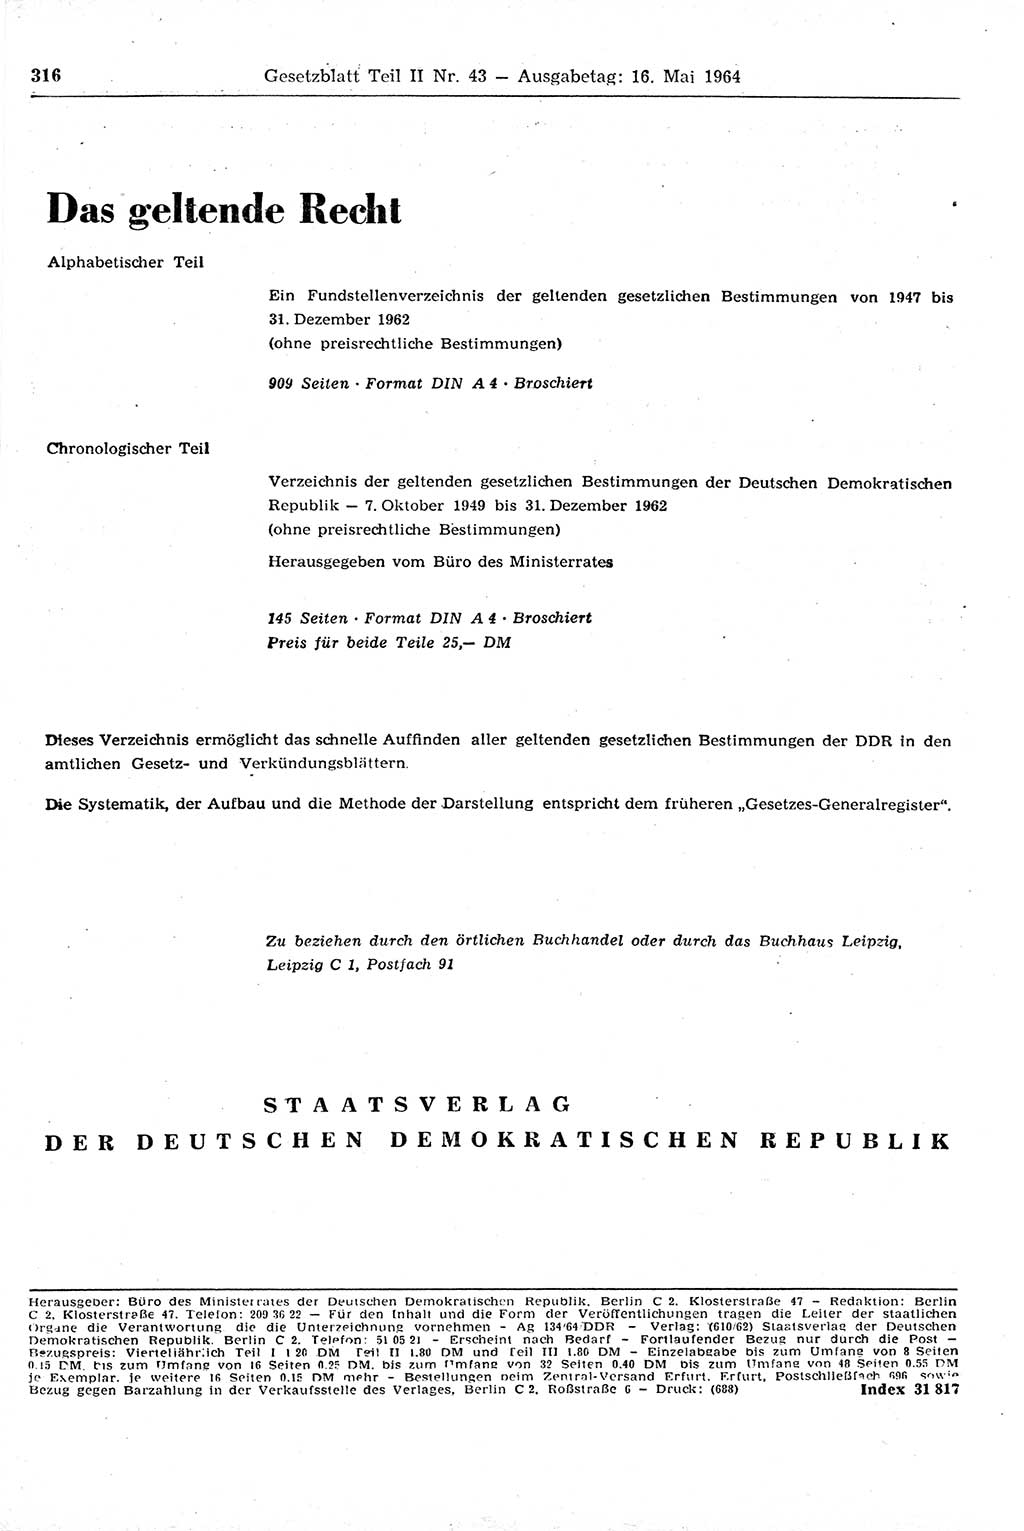 Gesetzblatt (GBl.) der Deutschen Demokratischen Republik (DDR) Teil ⅠⅠ 1964, Seite 316 (GBl. DDR ⅠⅠ 1964, S. 316)